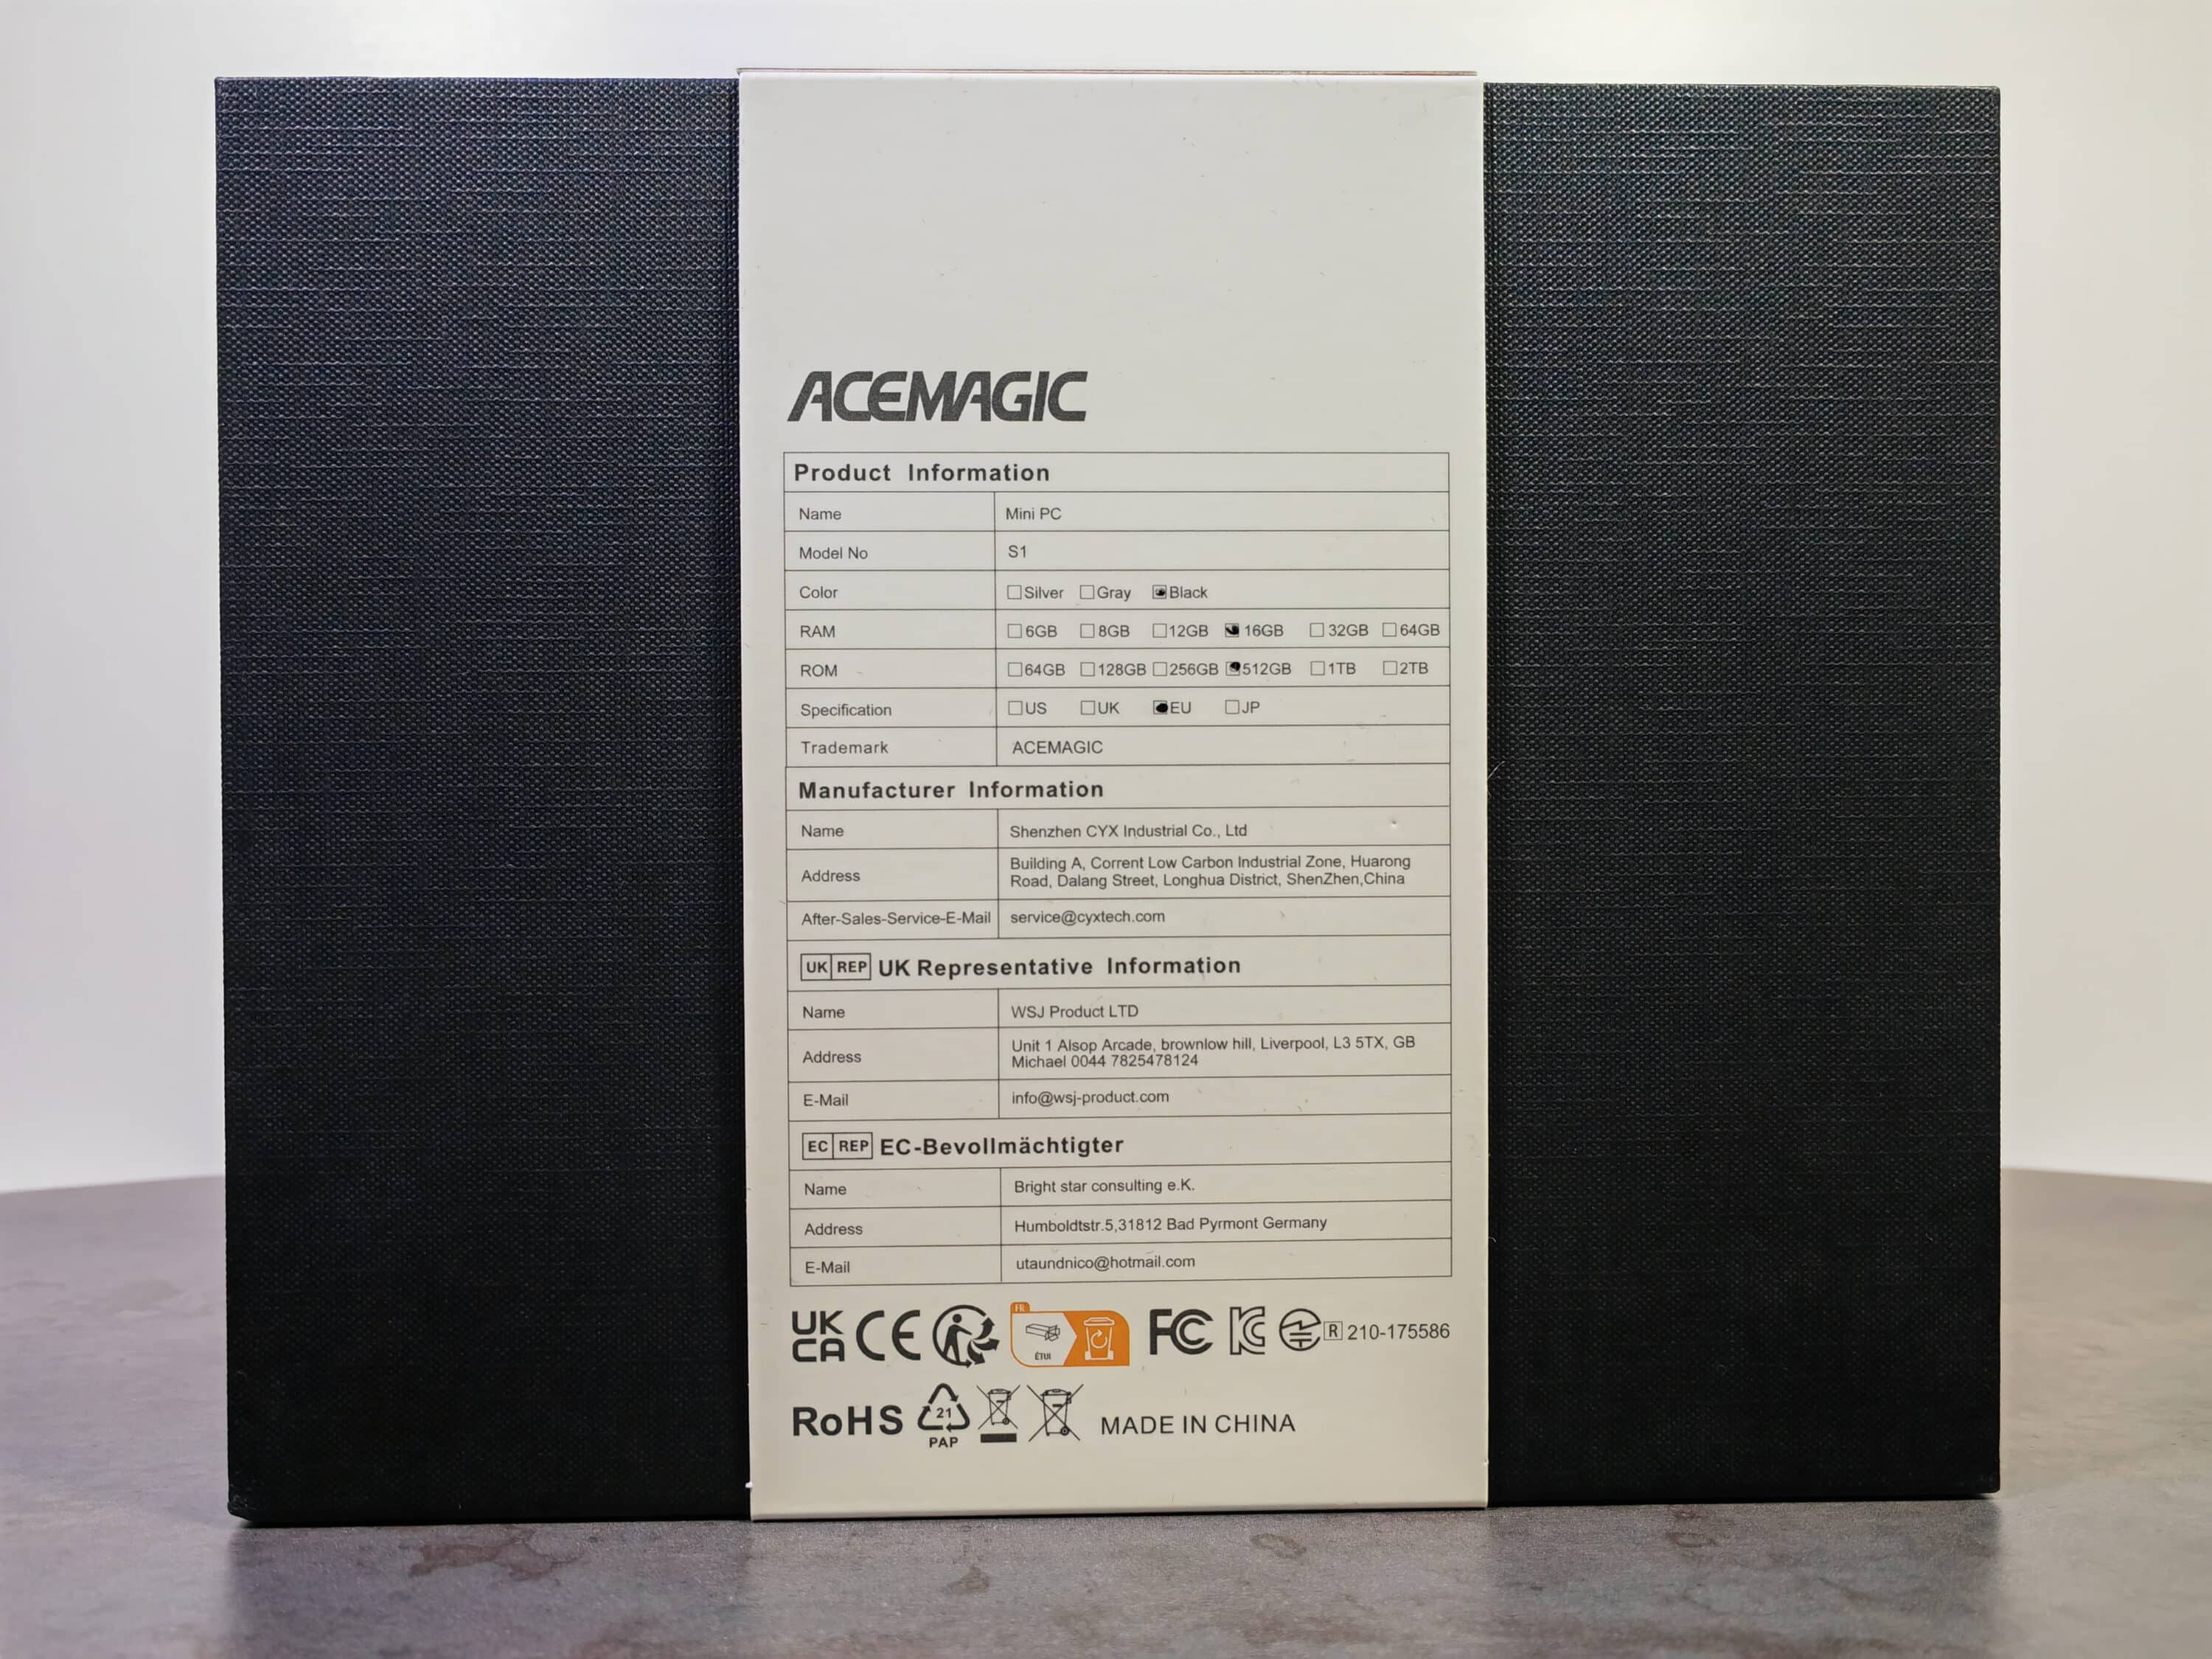 AceMagic S1 Mini PC Honest Review 